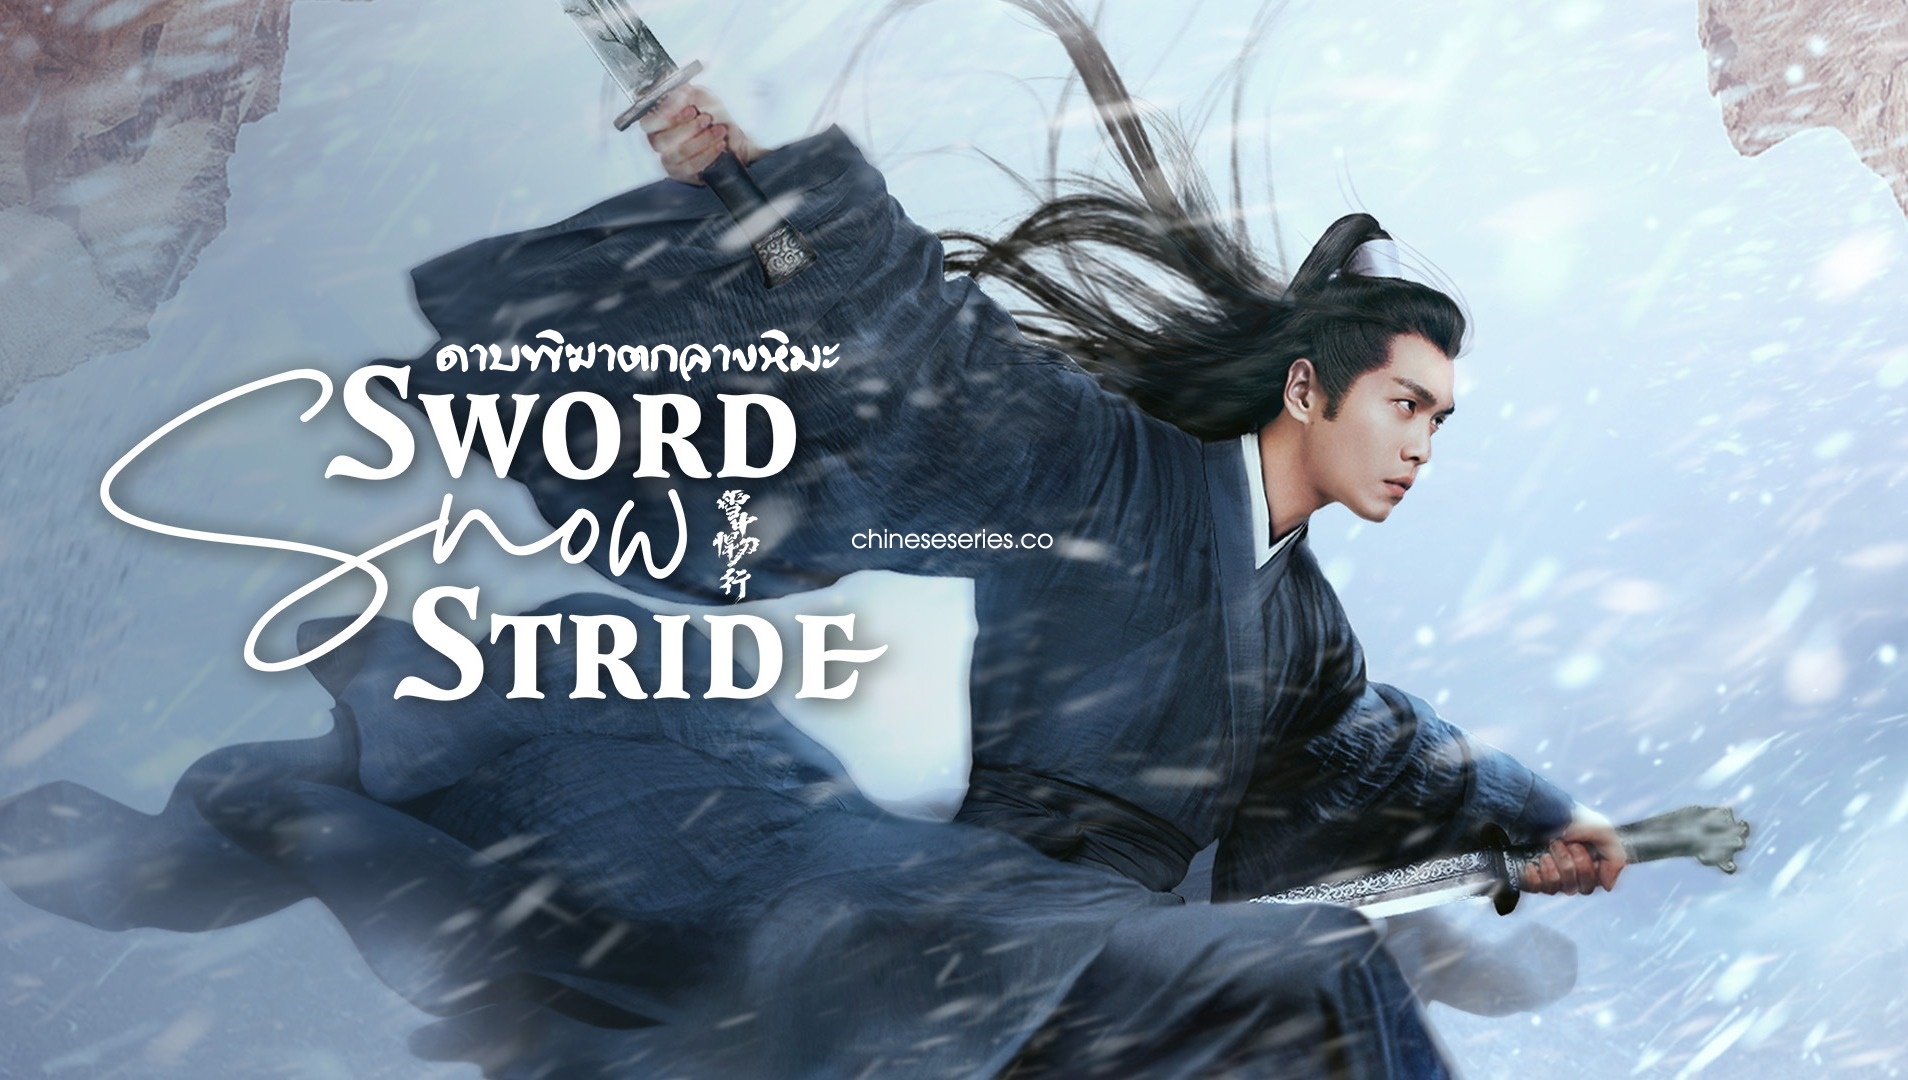 ดูซีรี่ย์จีน Sword Snow Stride (2021) ดาบพิฆาตกลางหิมะ พากย์ไทย